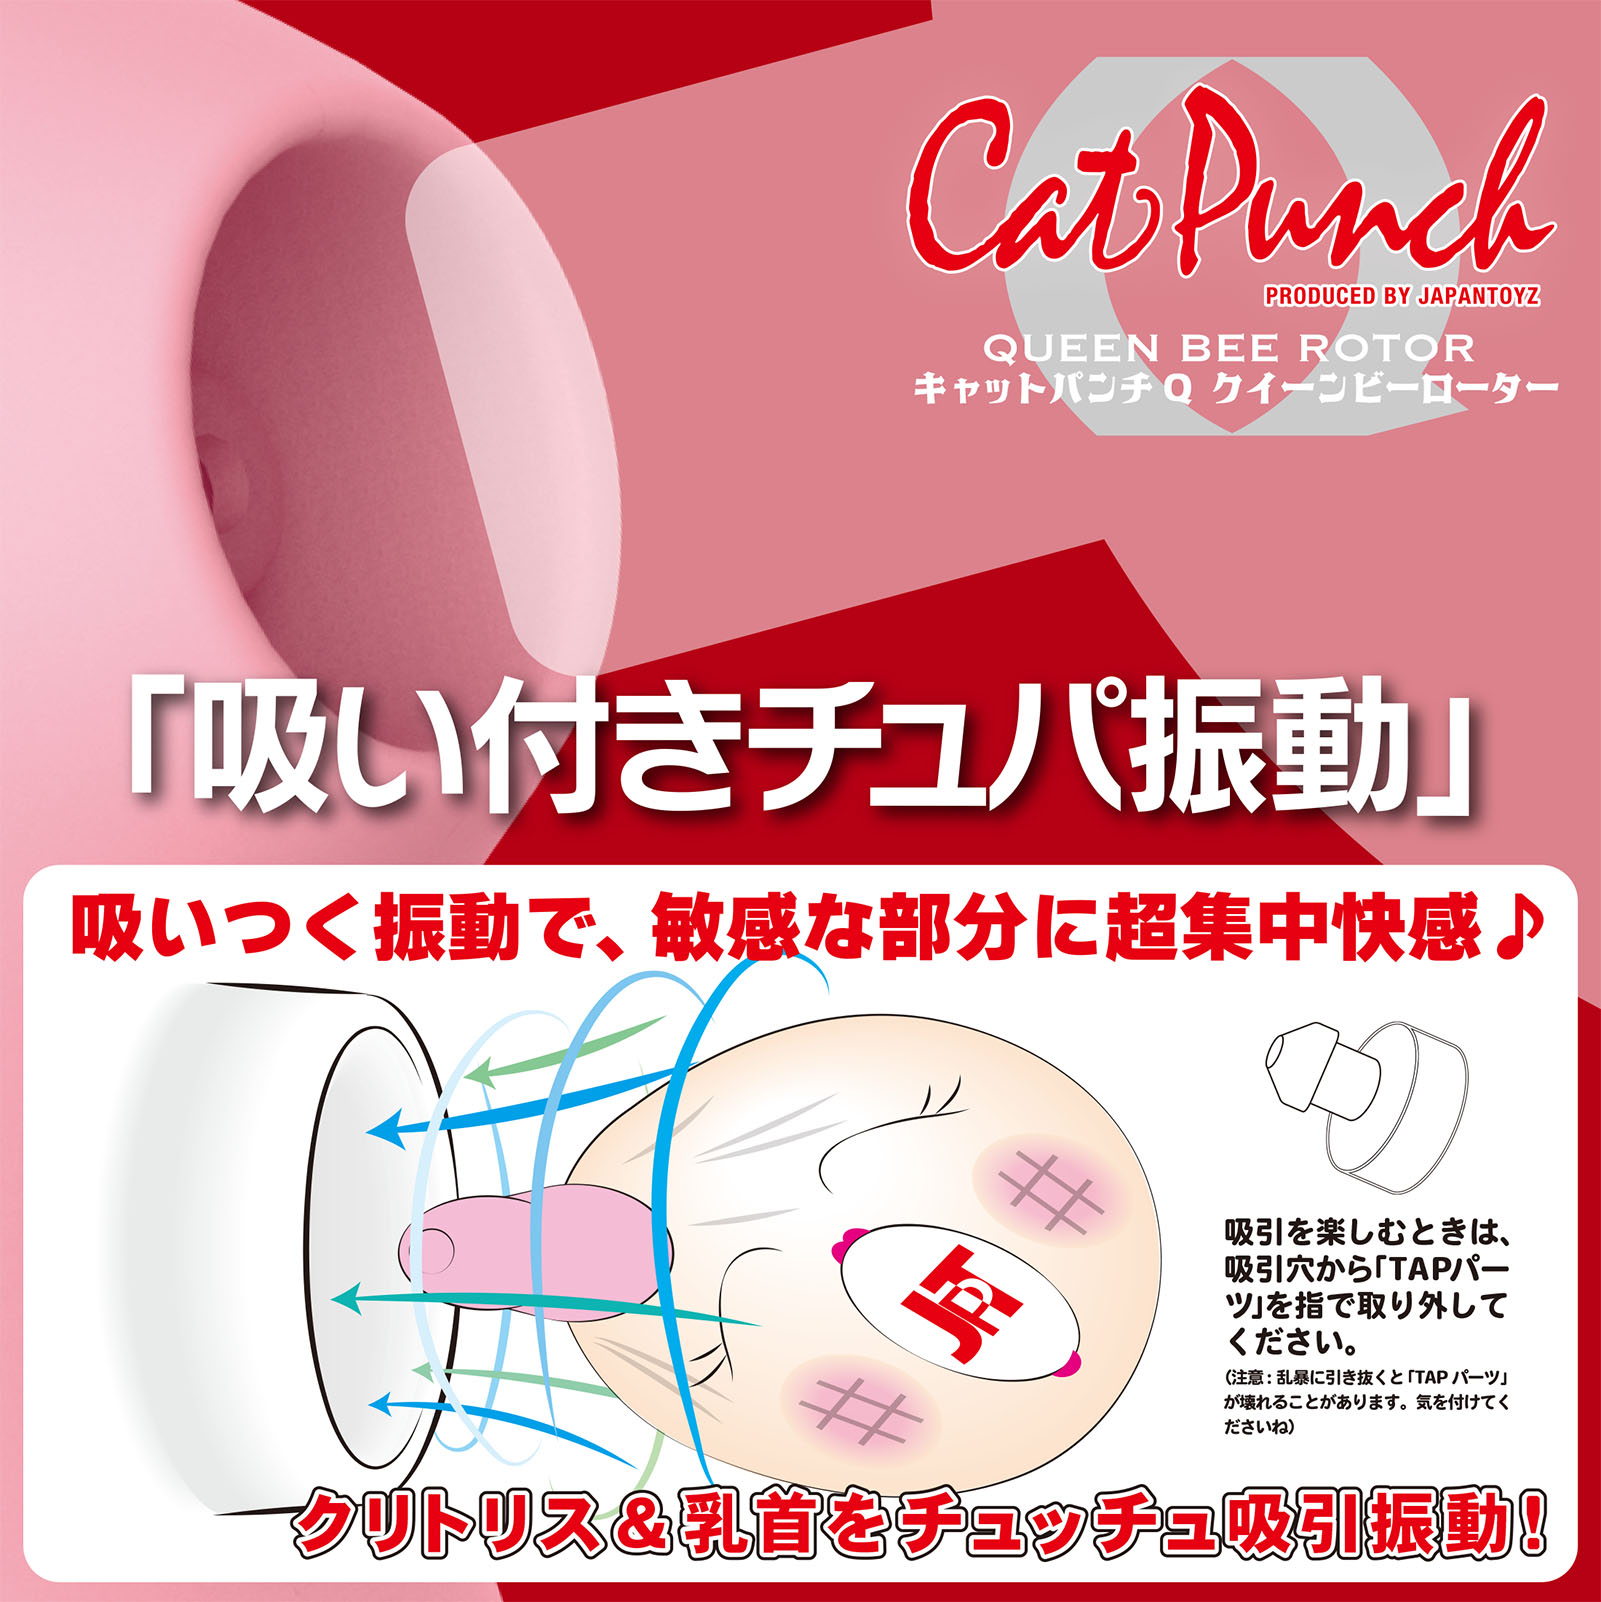 Cat Punch キャットパンチ Q クイーンビー ローター04